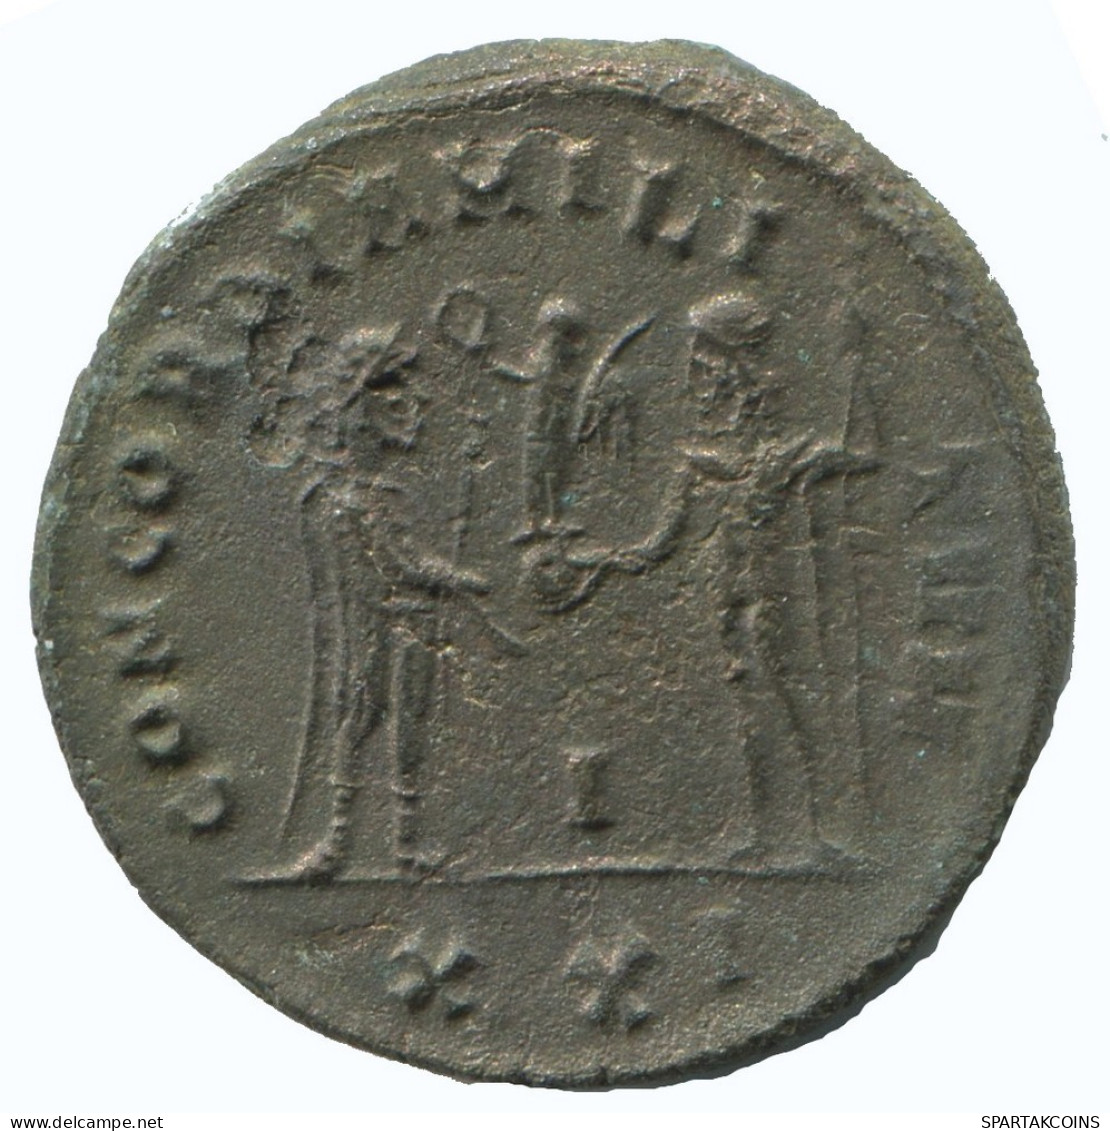 DIOCLETIAN ANTONINIANUS Antiochia I/xxi AD322 Concord 4.2g/22mm #NNN1848.18.U.A - The Tetrarchy (284 AD To 307 AD)